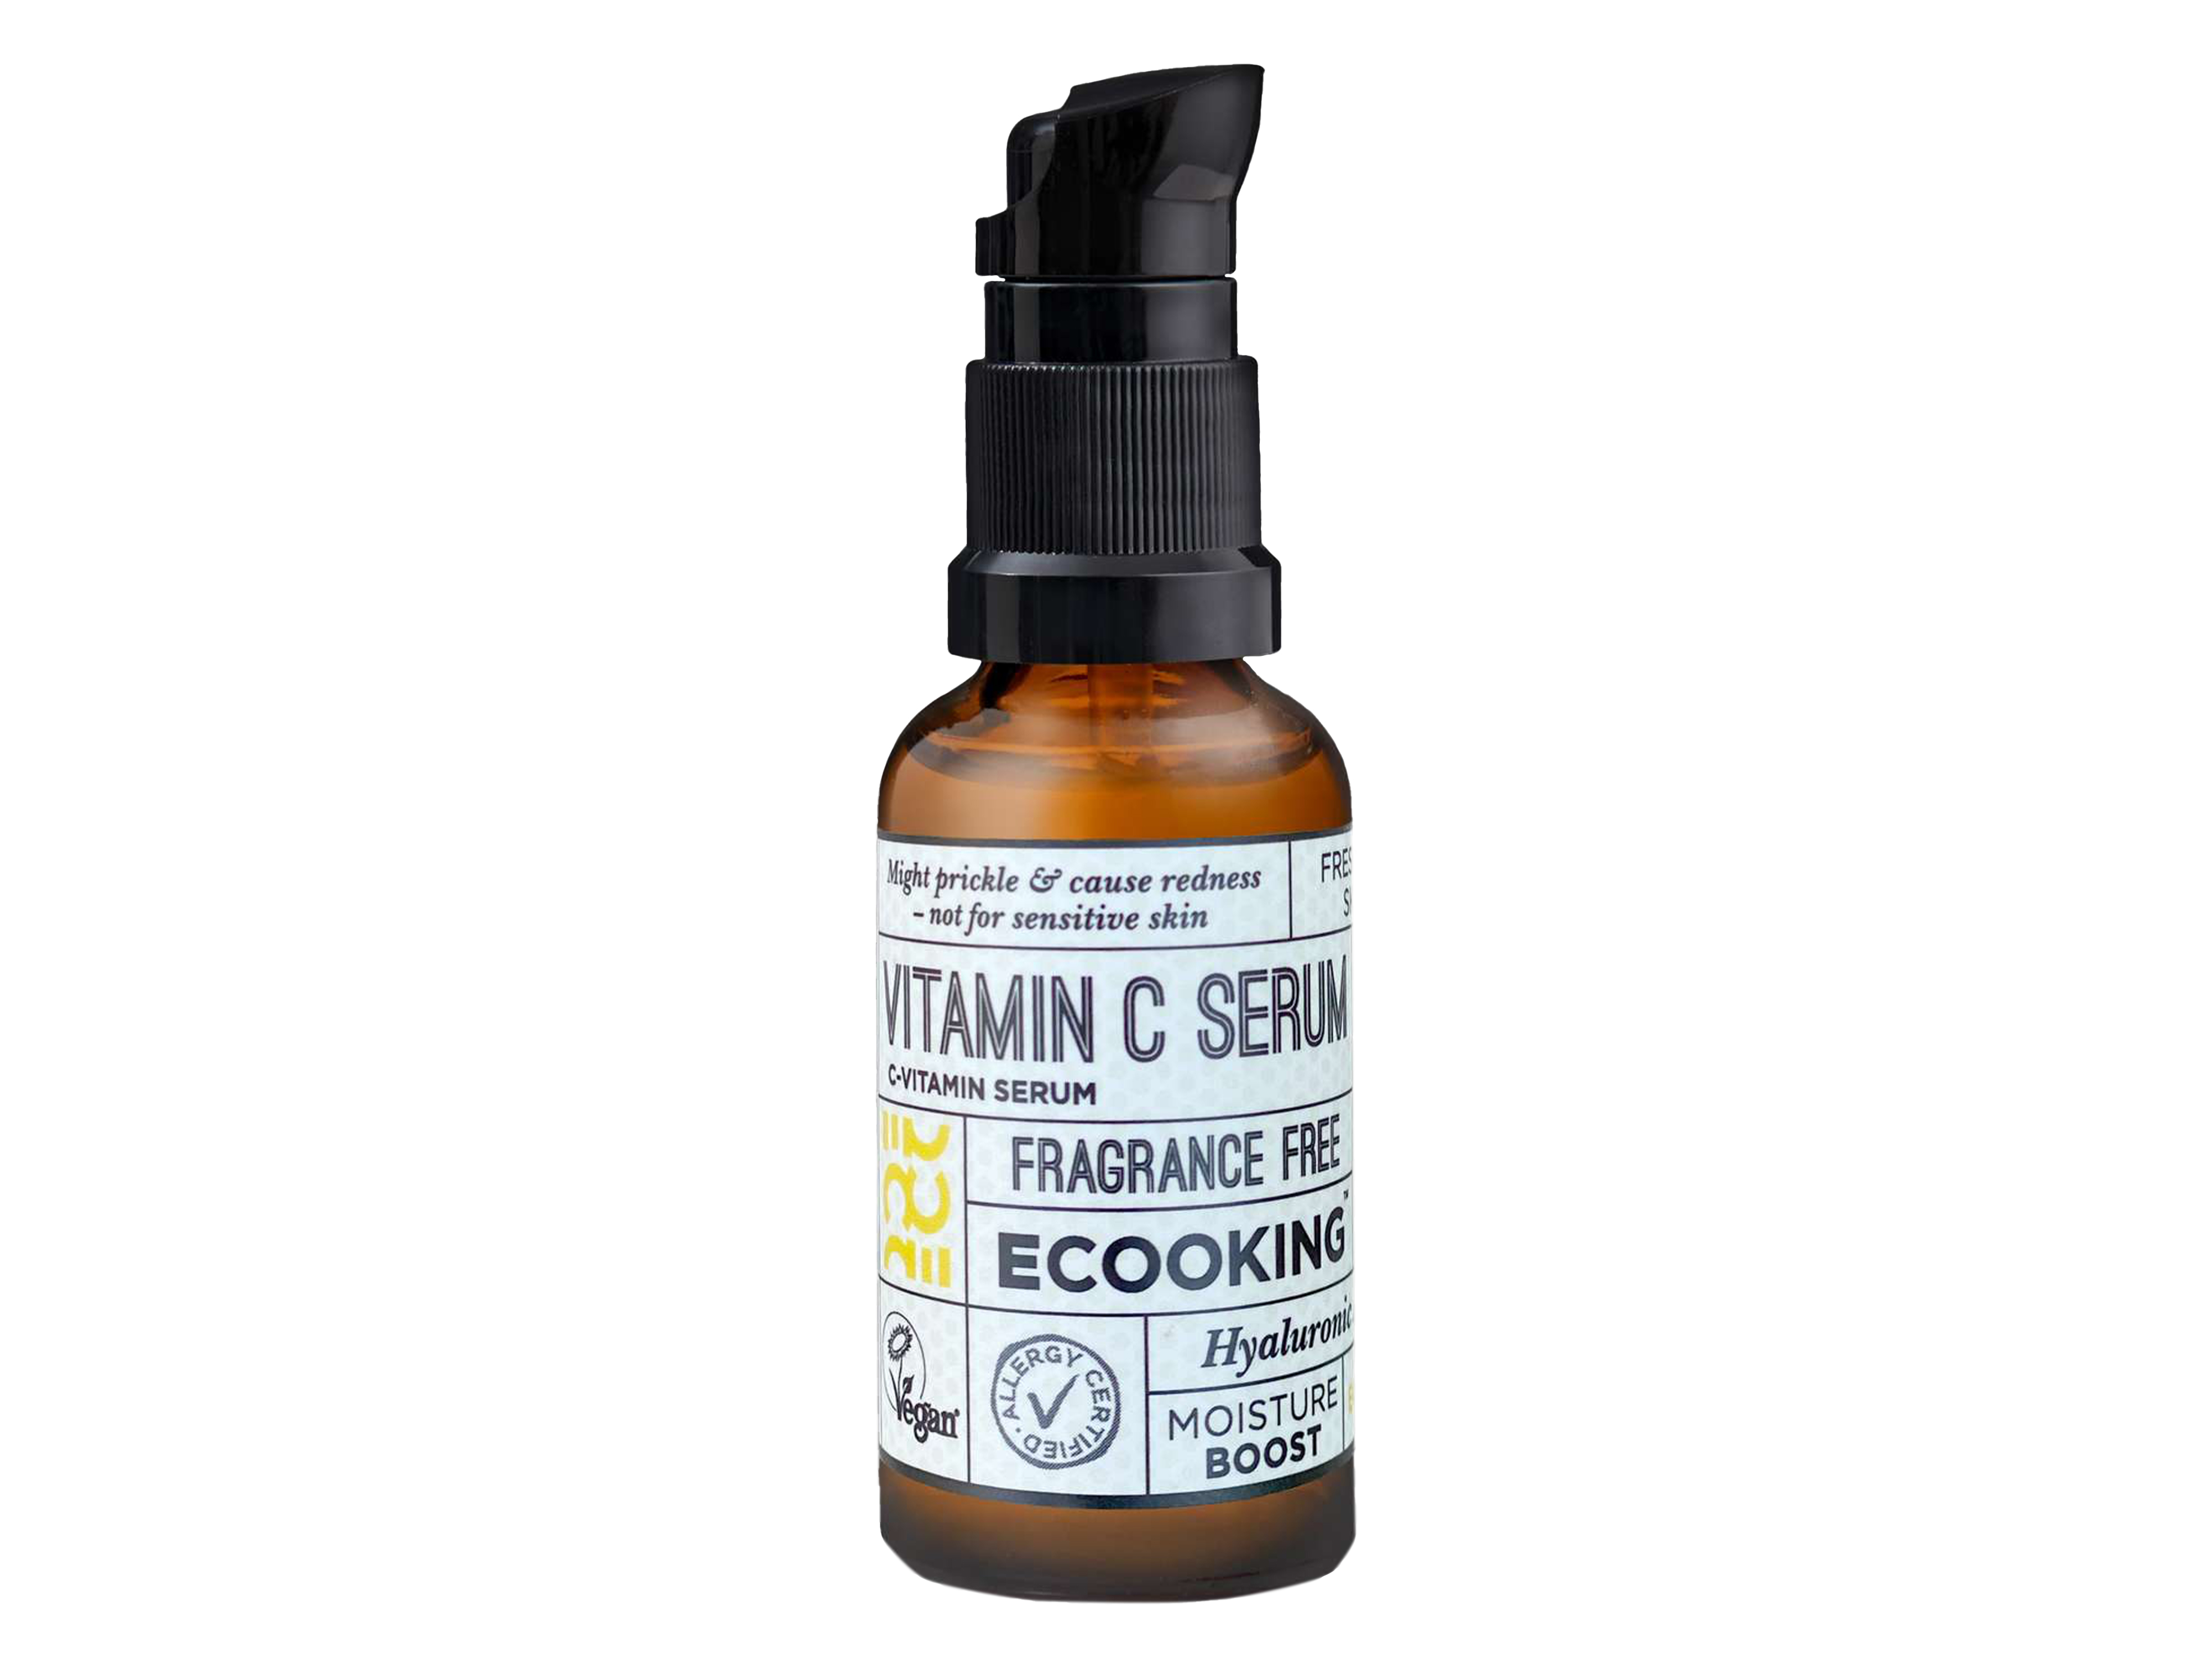 Ecooking Vitamin C Serum, 20 ml